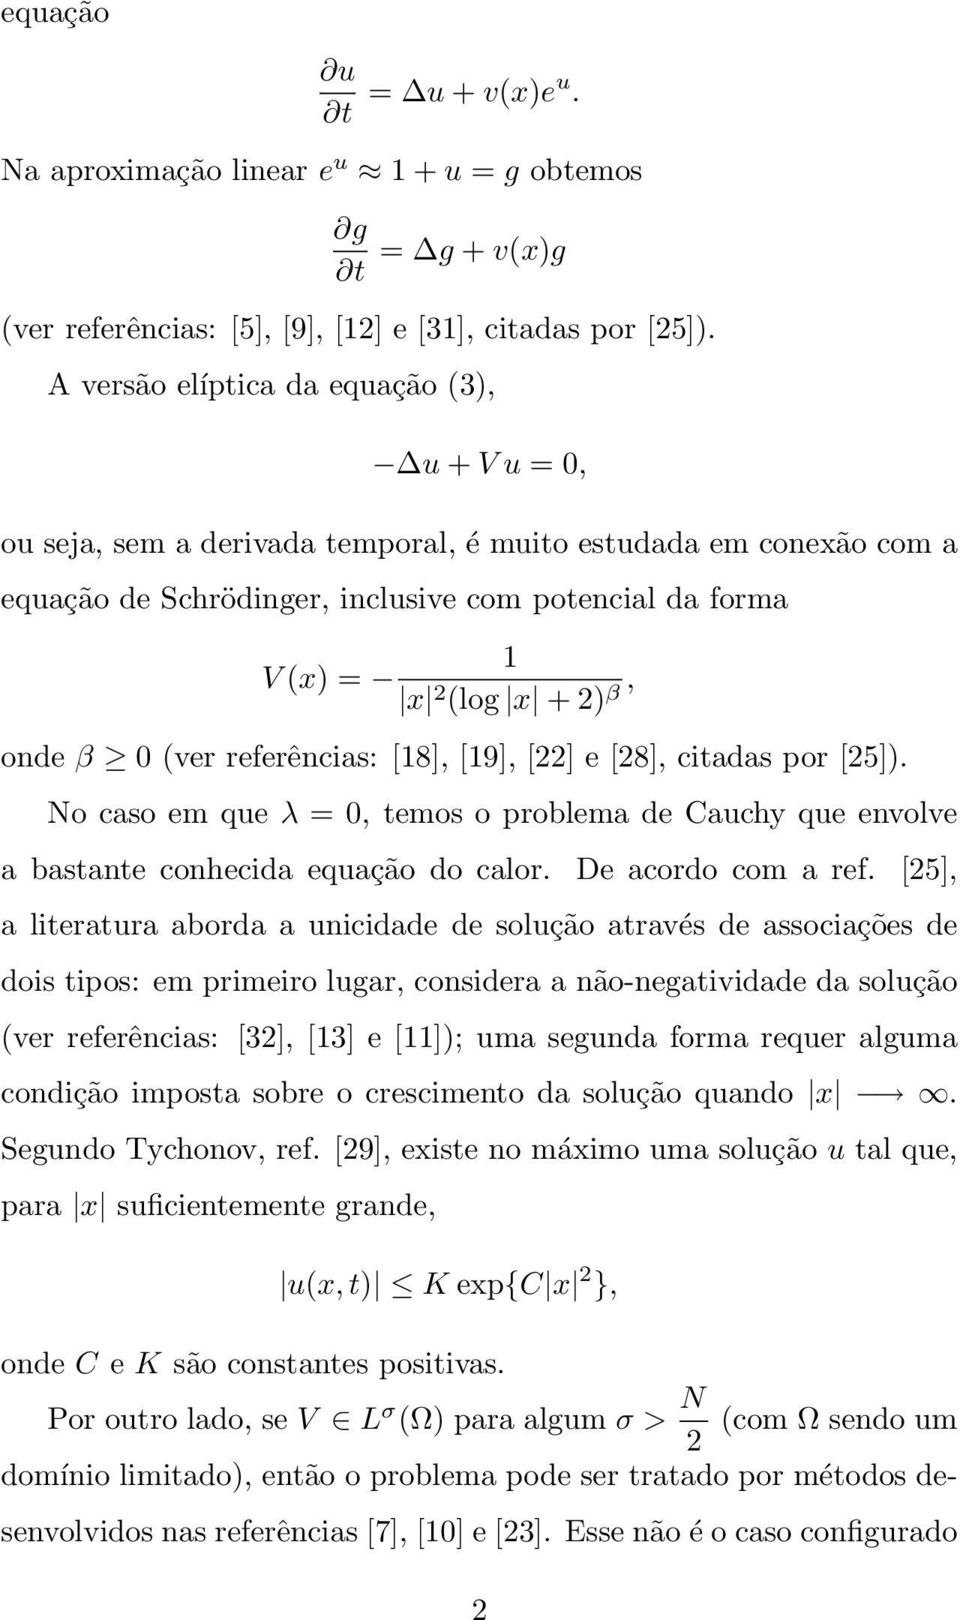 β, onde β 0 (ver referências: [18], [19], [22] e [28], citadas por [25]). No caso em que λ = 0, temos o problema de Cauchy que envolve a bastante conhecida equação do calor. De acordo com a ref.